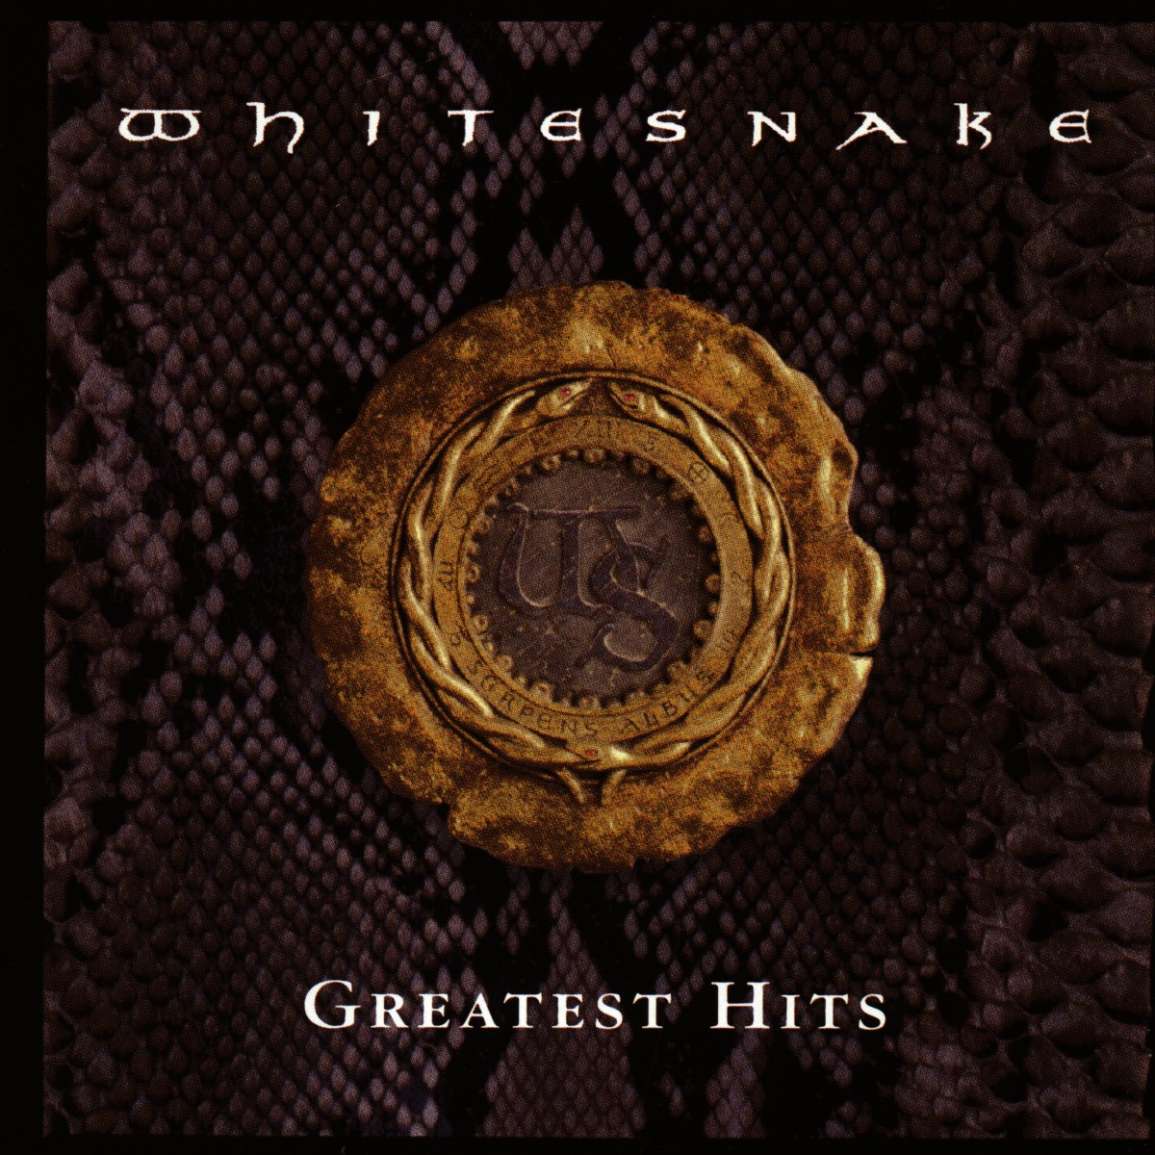 Greatest hits | Whitesnake | stevevai.it